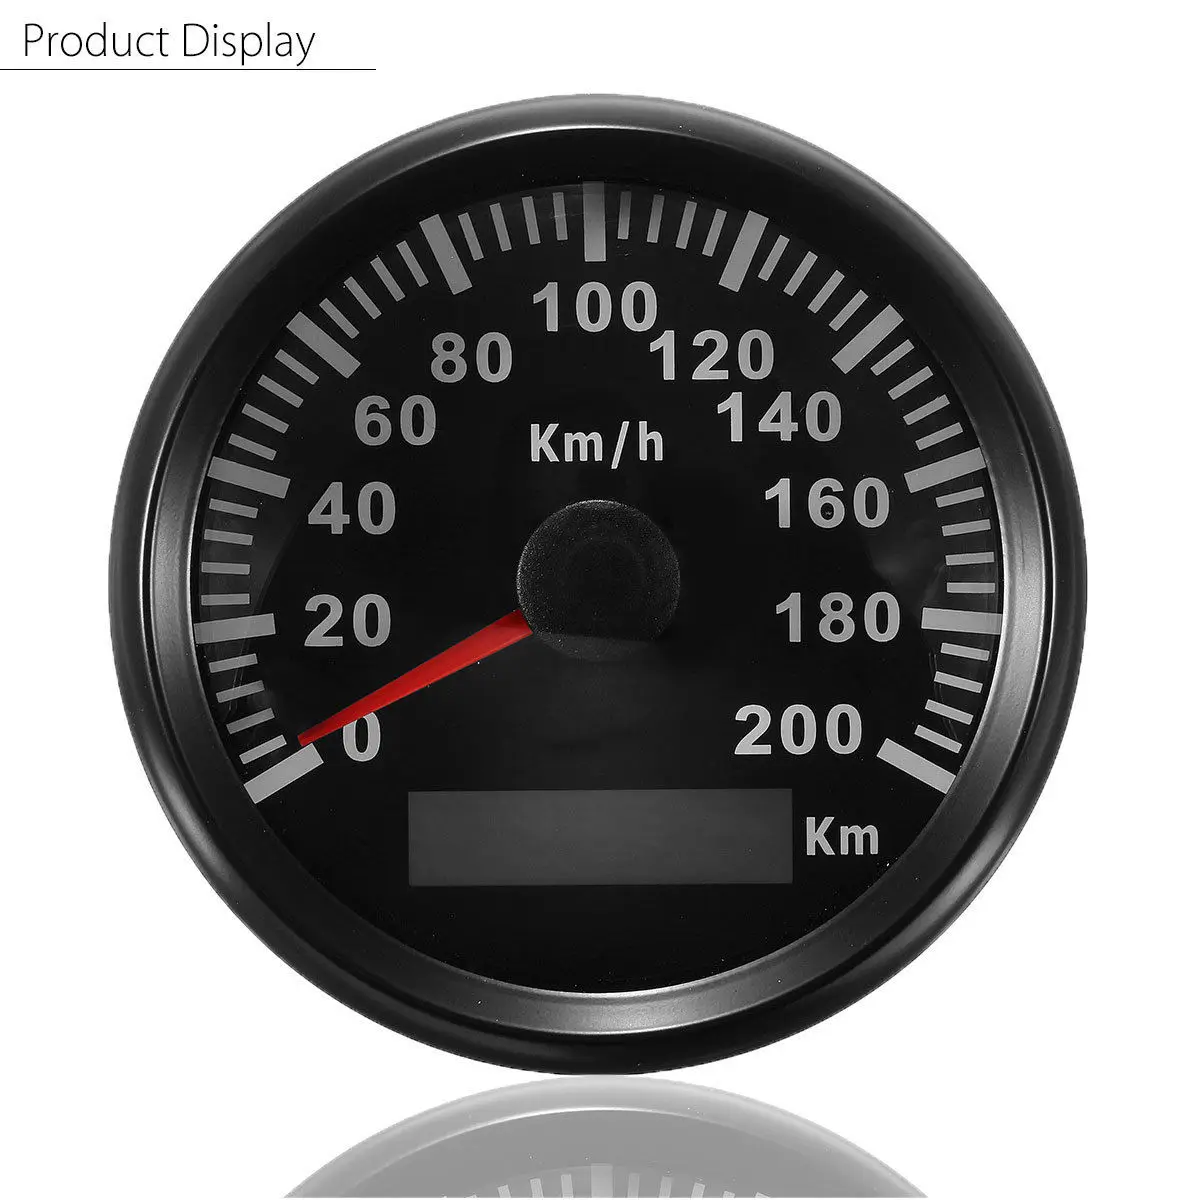 85mm 200 KM/H Car Motor Stainless Steel Speedometer Odometer Gauge #2 